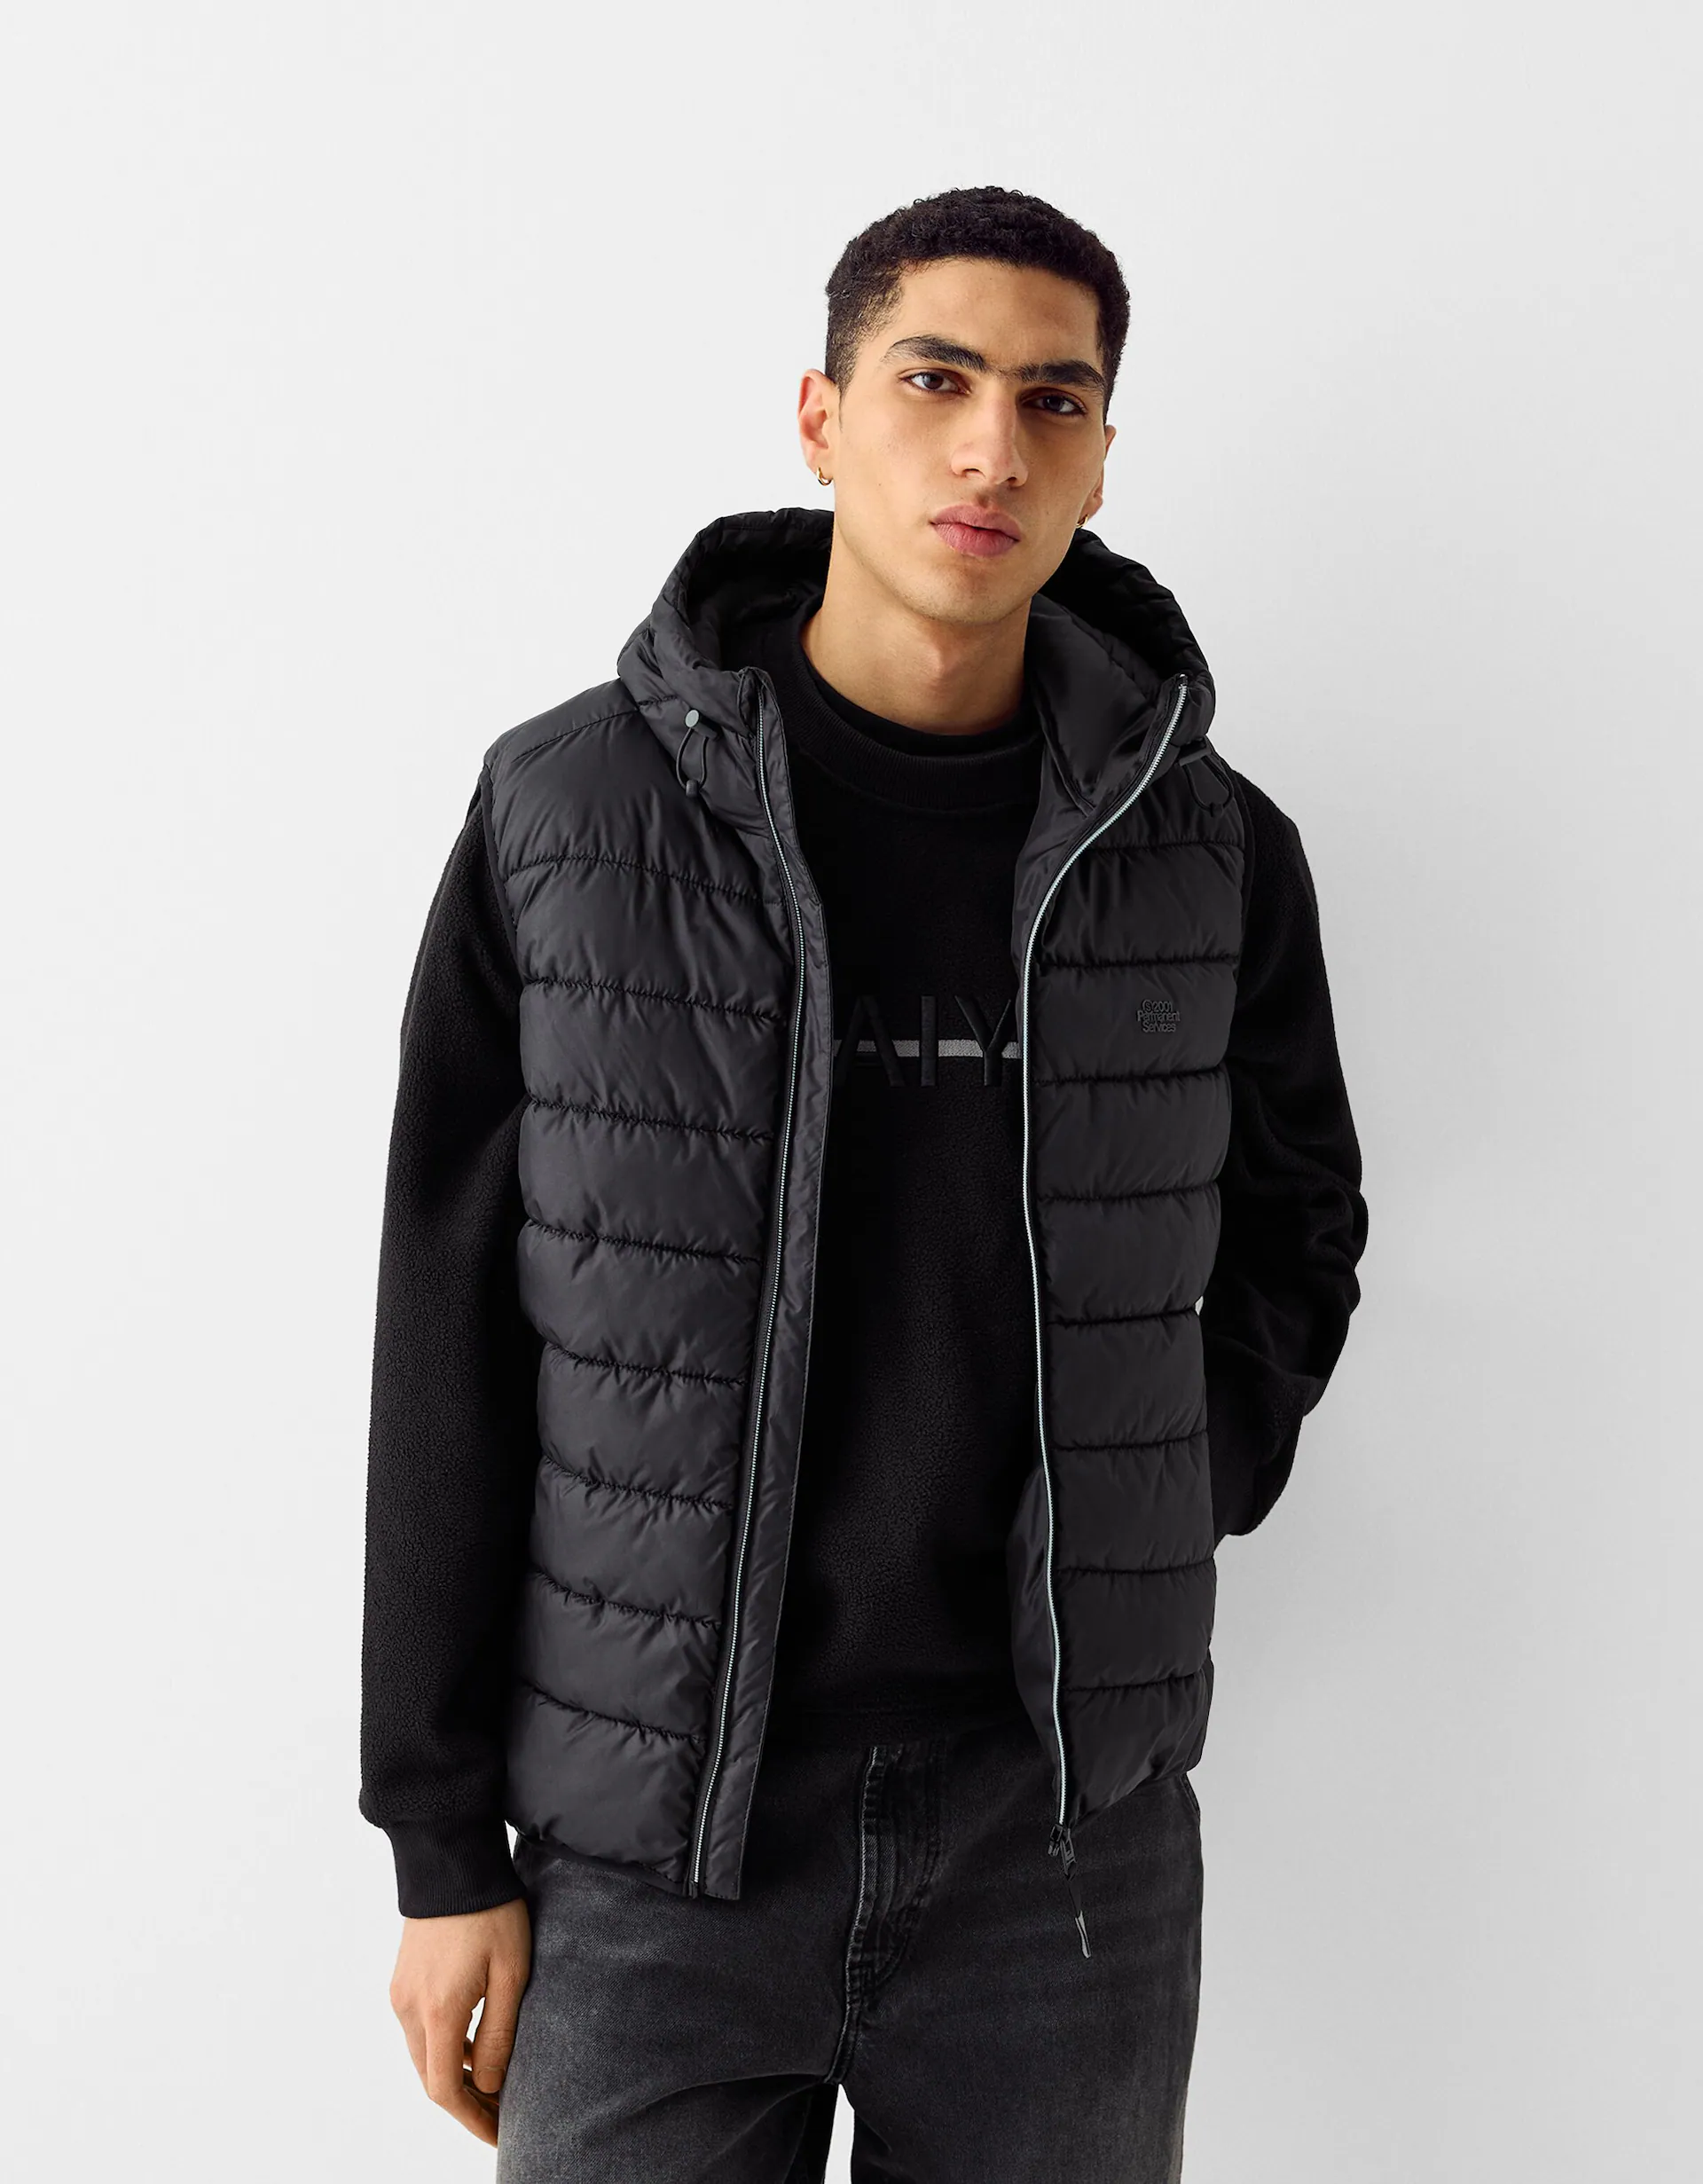 Sudadera con capucha reflectante de lana para hombre, abrigo con